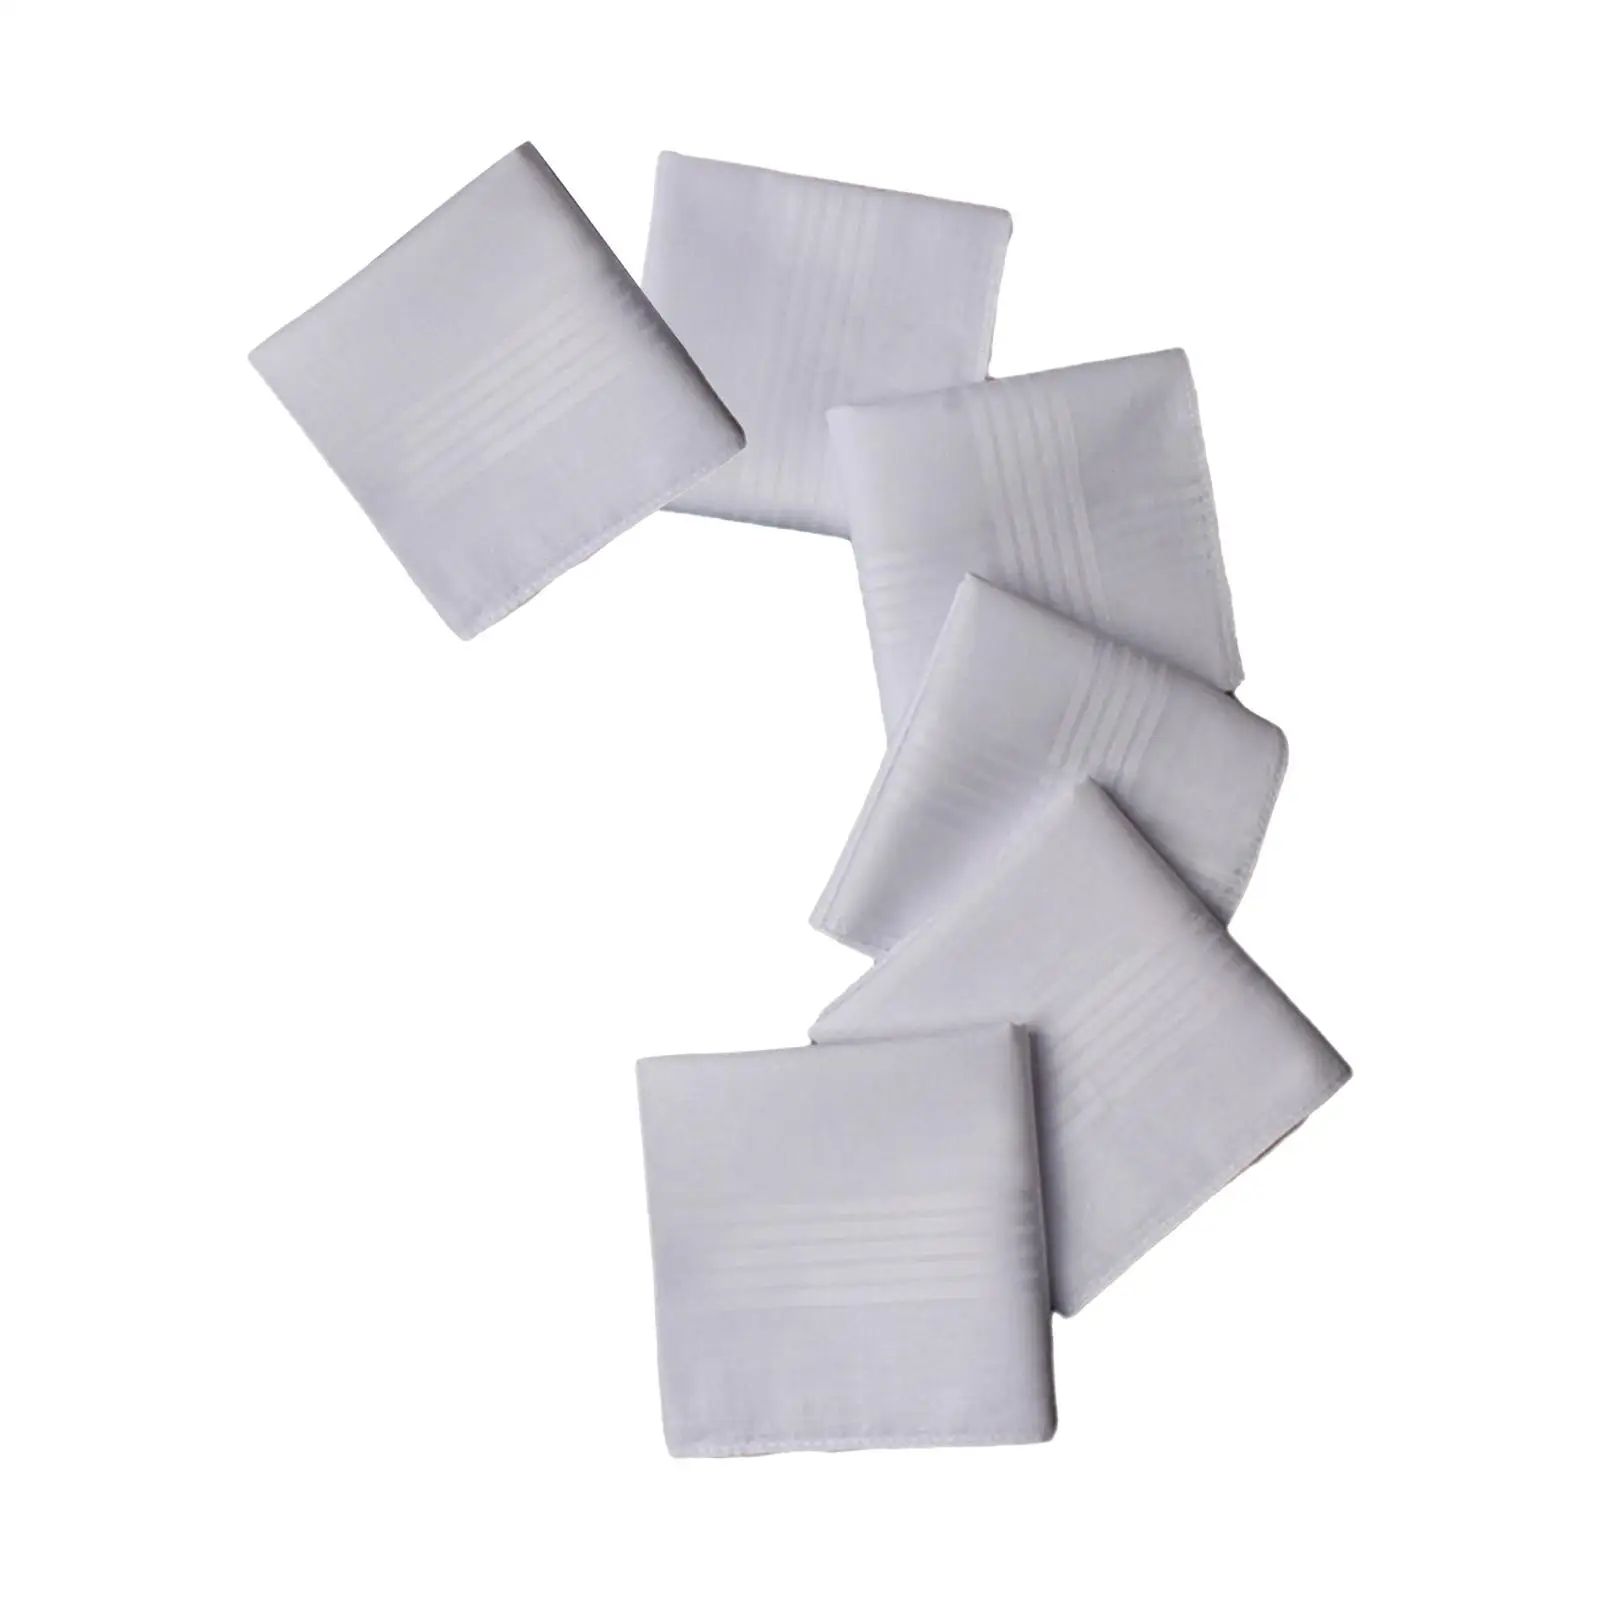 6x Pure White Handkerchiefs Solid Color Cotton Hankies Men Handkerchiefs Gift for Grandfather Birthday Wedding Gentlemen Party